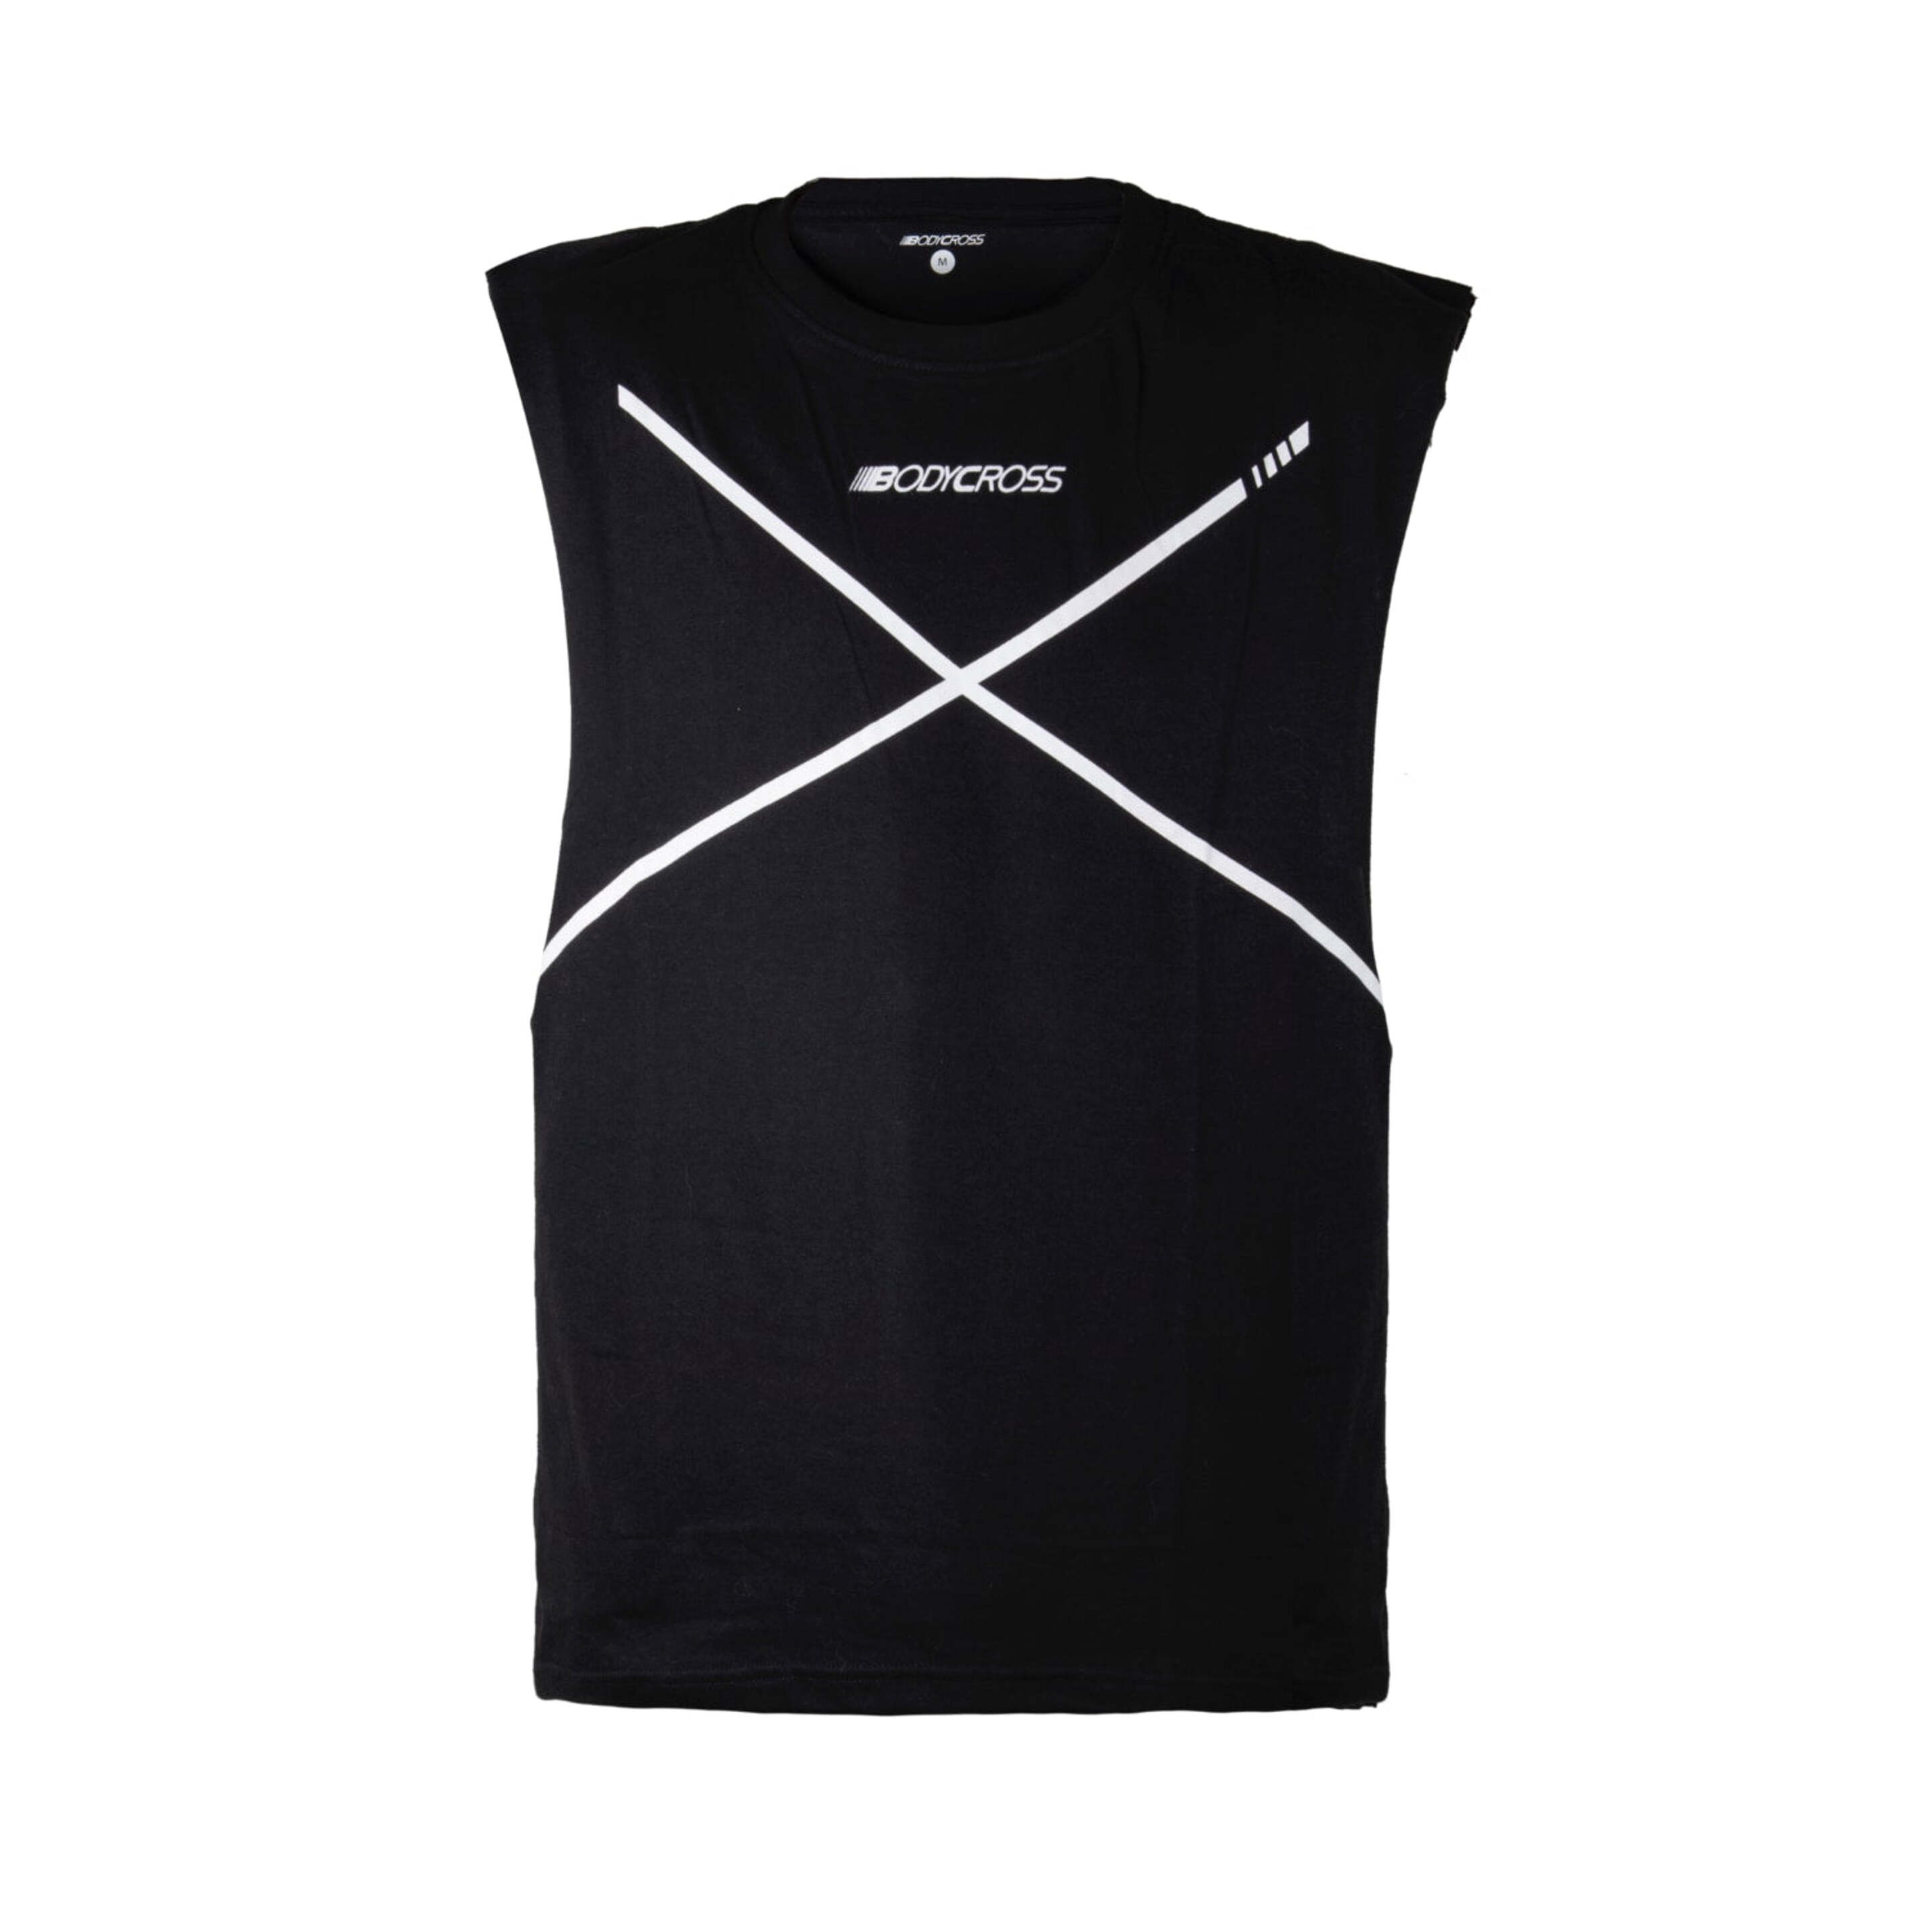 Camiseta Deportiva Bodycross Bryton - Negro - Bryton-black/white-s  MKP